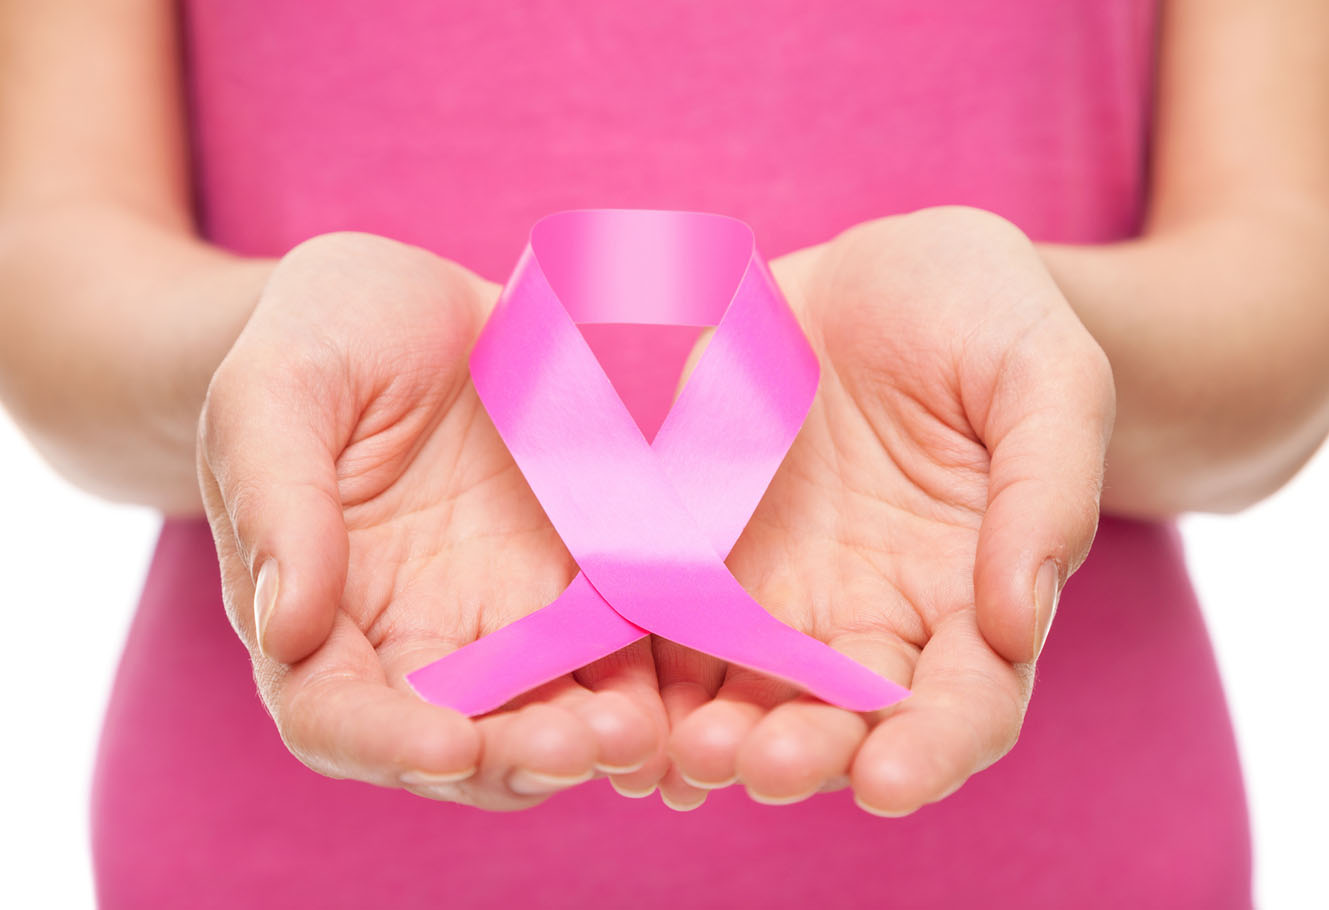 أعراض سرطان الثدي المبكرة عند الفتيات والرحال وطرق علاجها الأكيدة